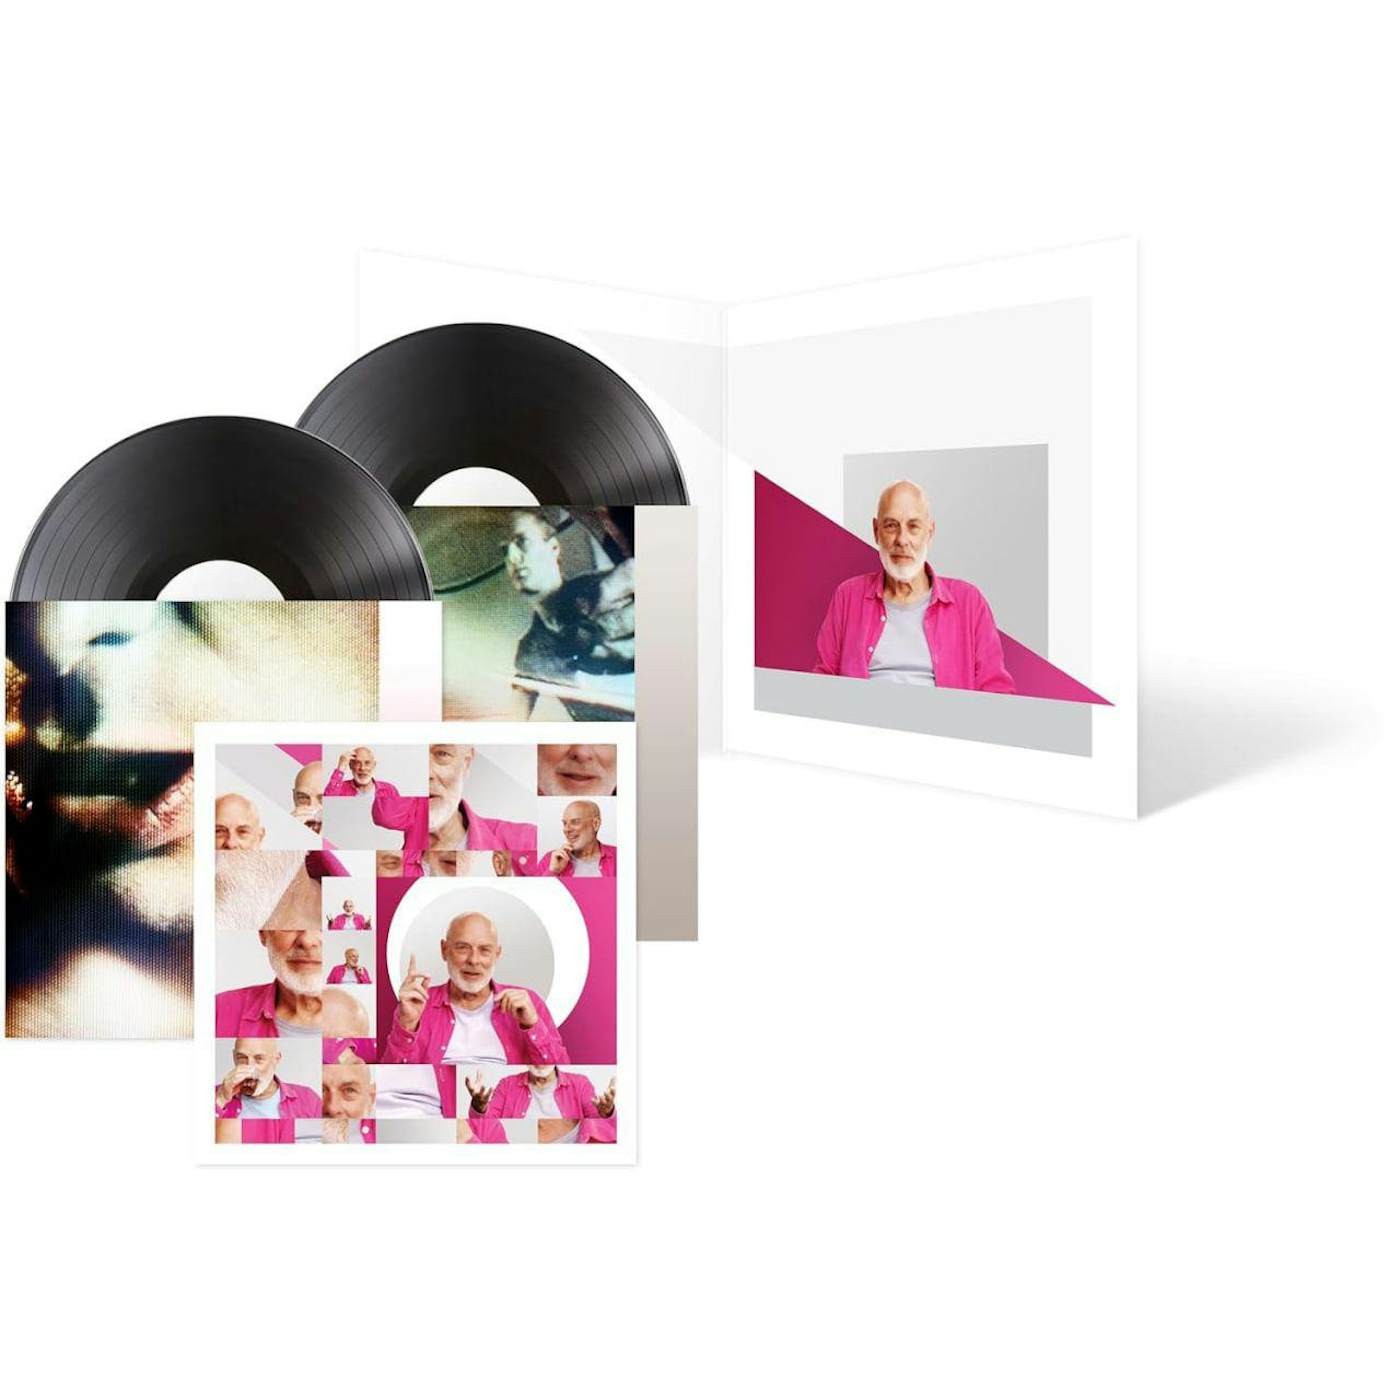 Brian Eno ENO - Original Soundtrack Vinyl Record